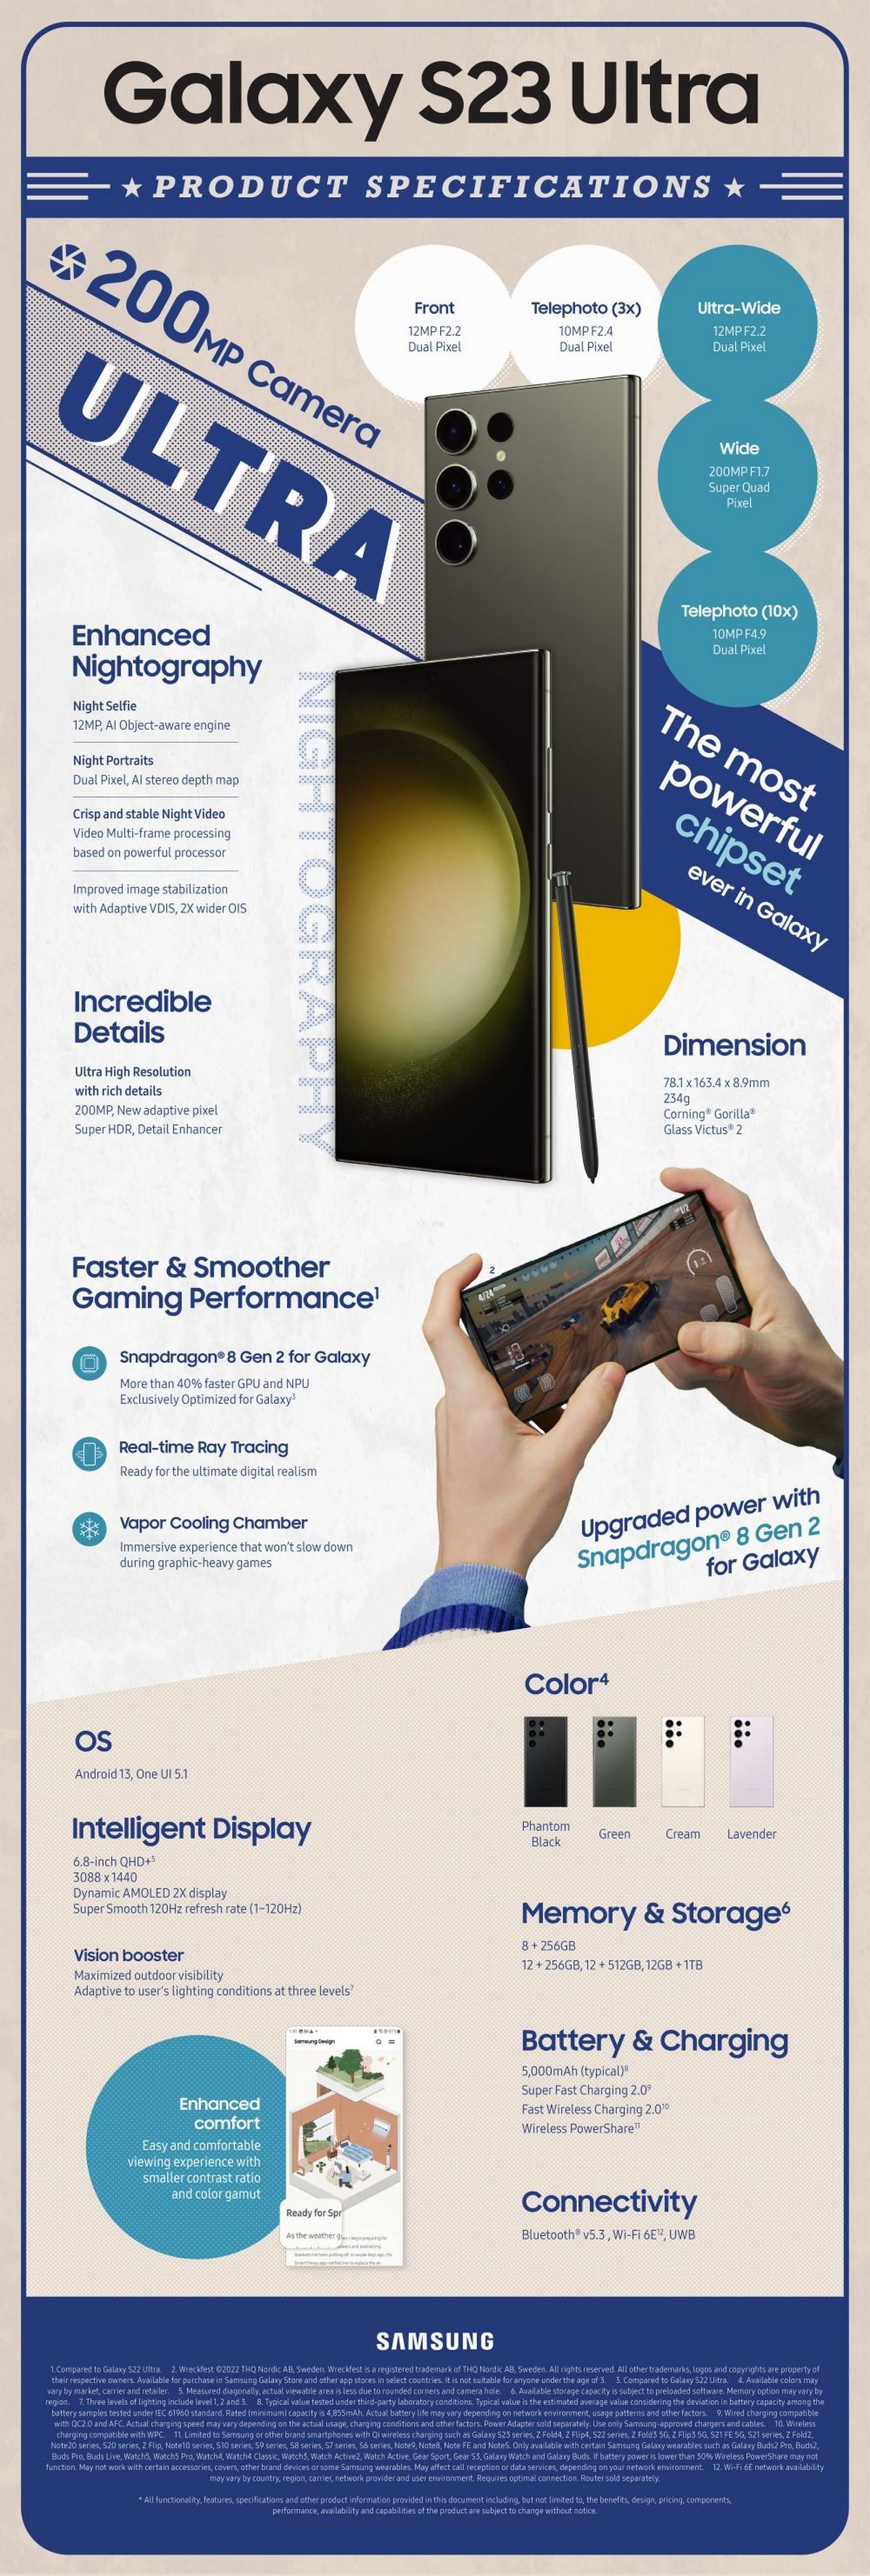 در اینجا اینفوگرافیک رسمی سامسونگ برای گوشی های گلکسی اس 23 و لپ تاپ های Book3 آمده است